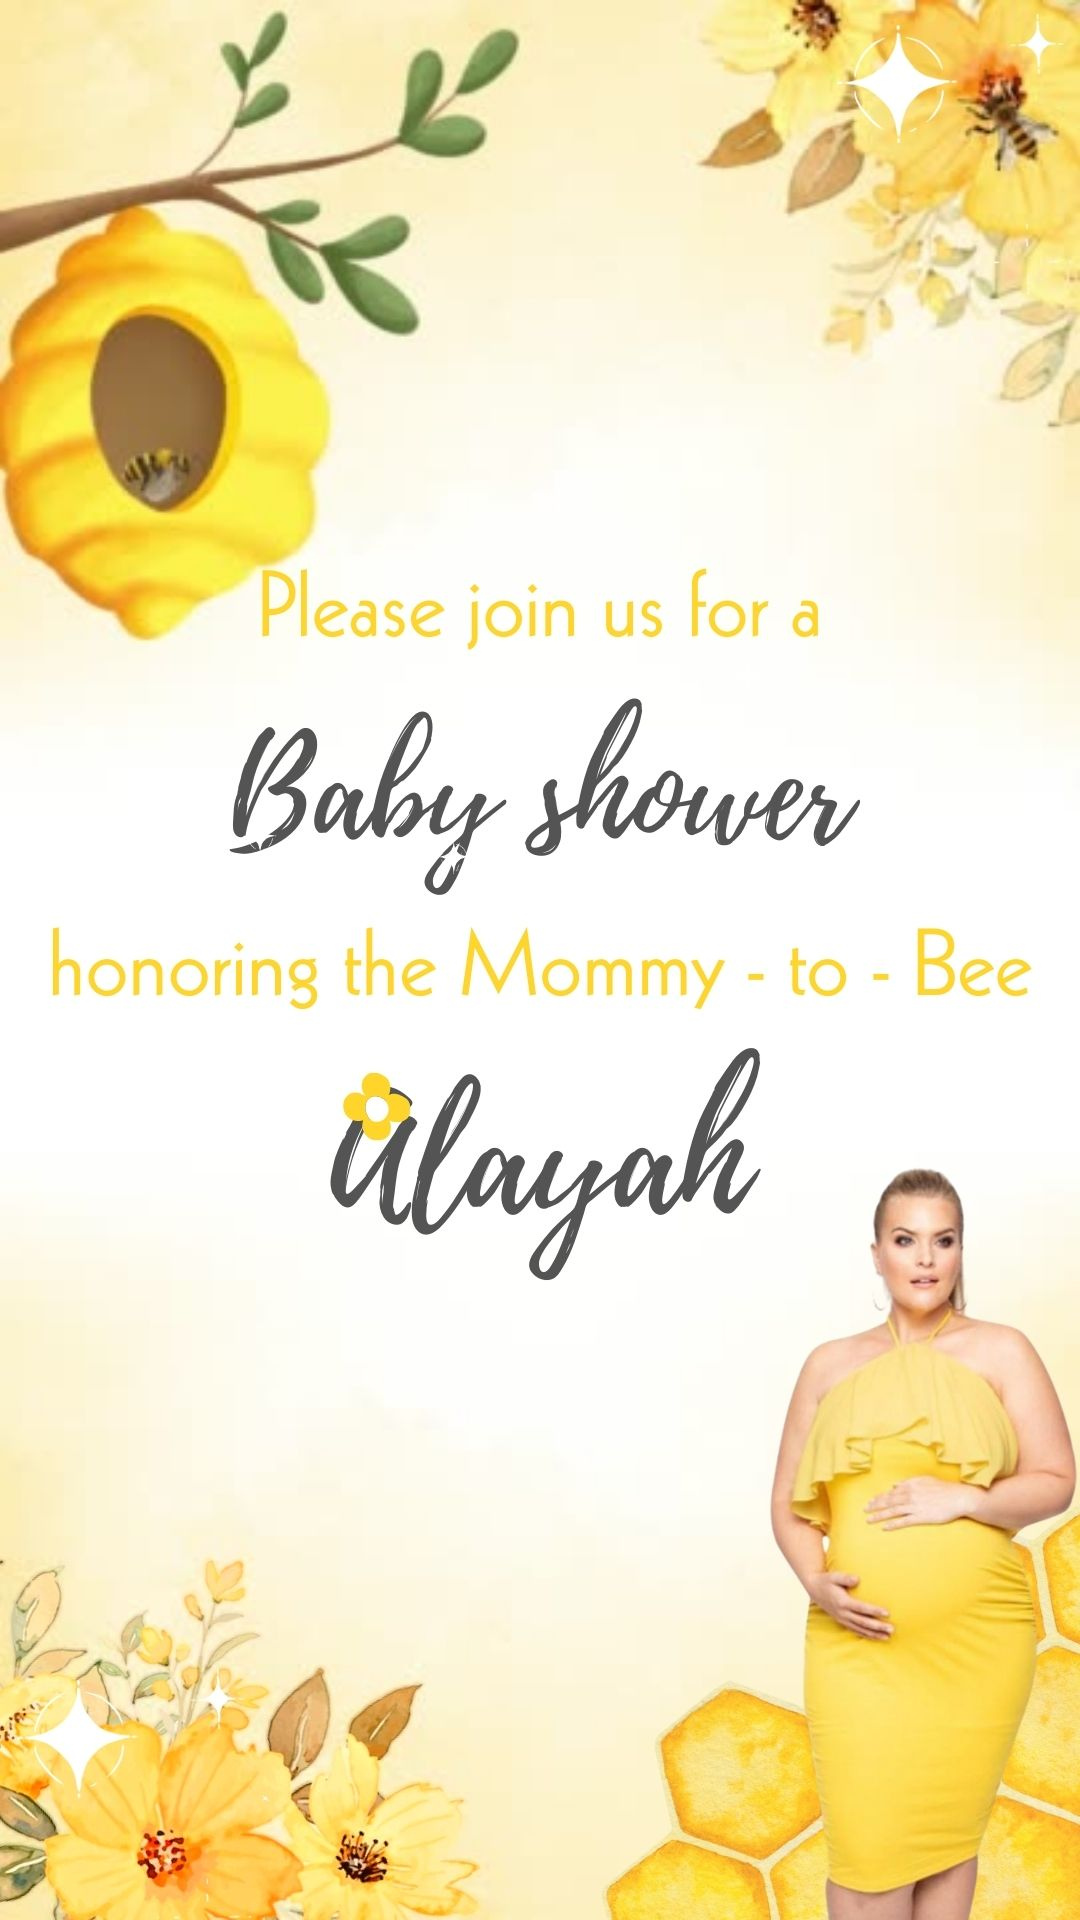 Invitación en vídeo del baby shower de abejas - Invitación a la ducha de abejorros - Invitación al tema de la ducha de abejas